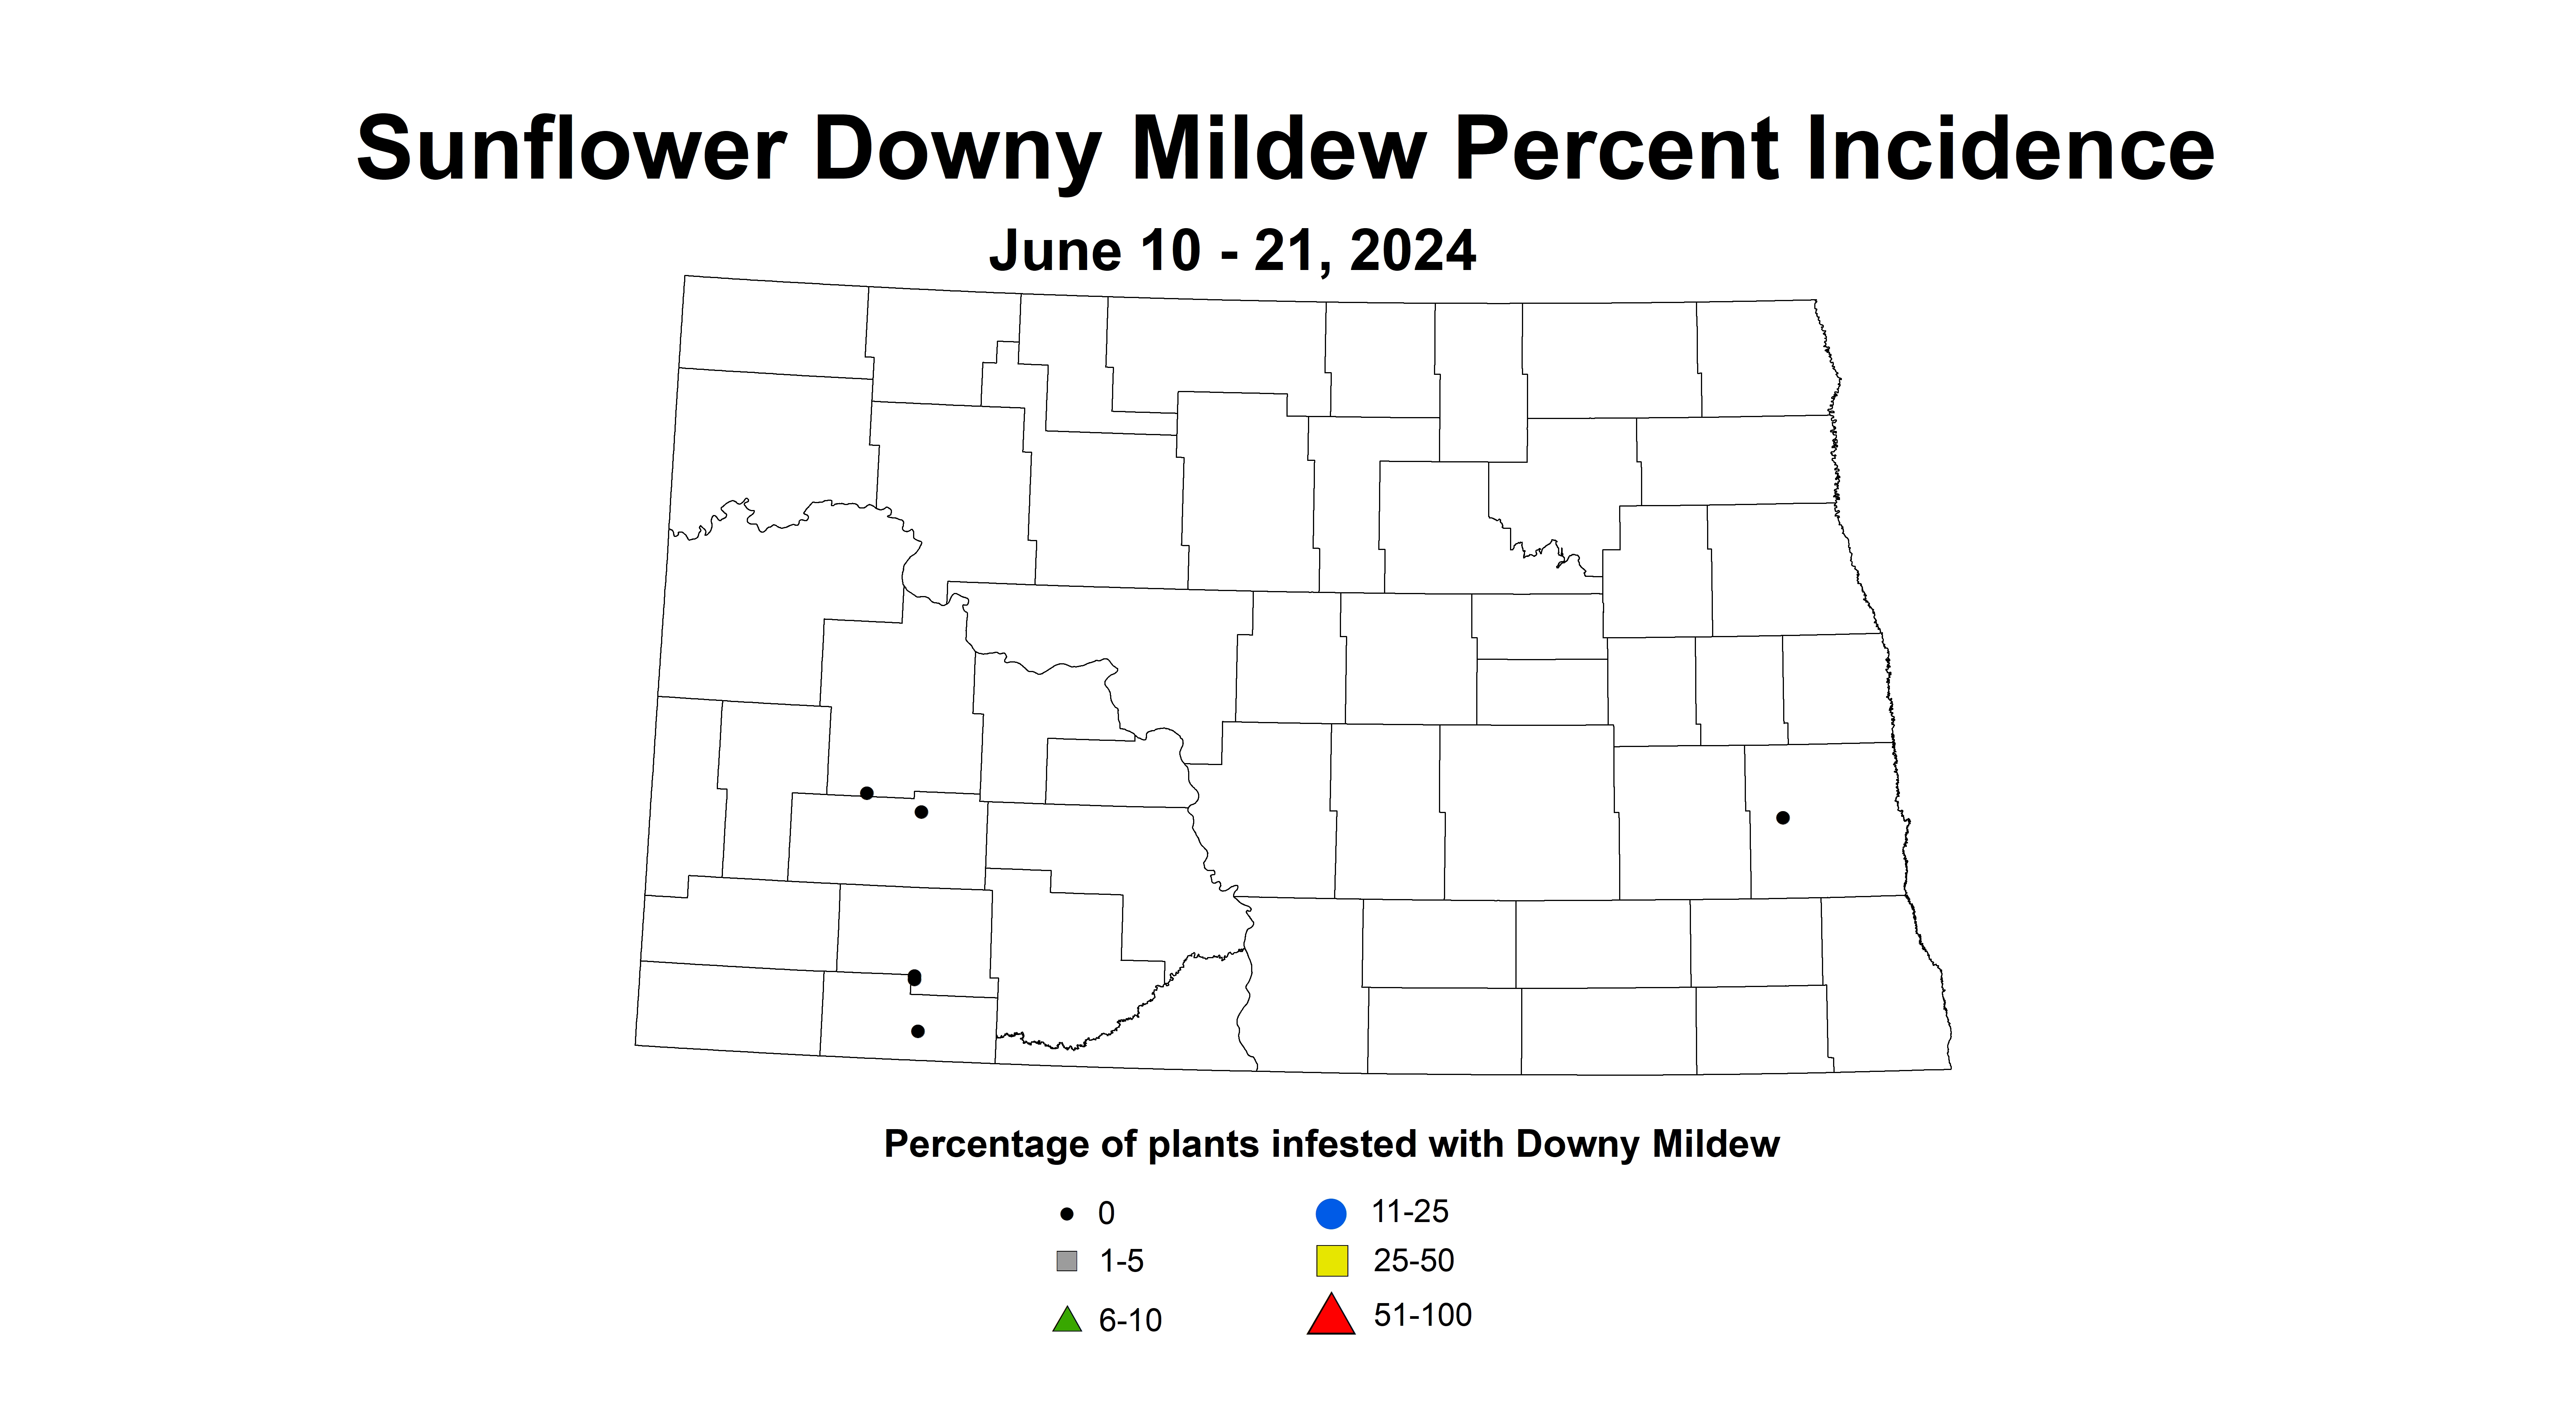 sunflower downy mildew June 10-21 2024